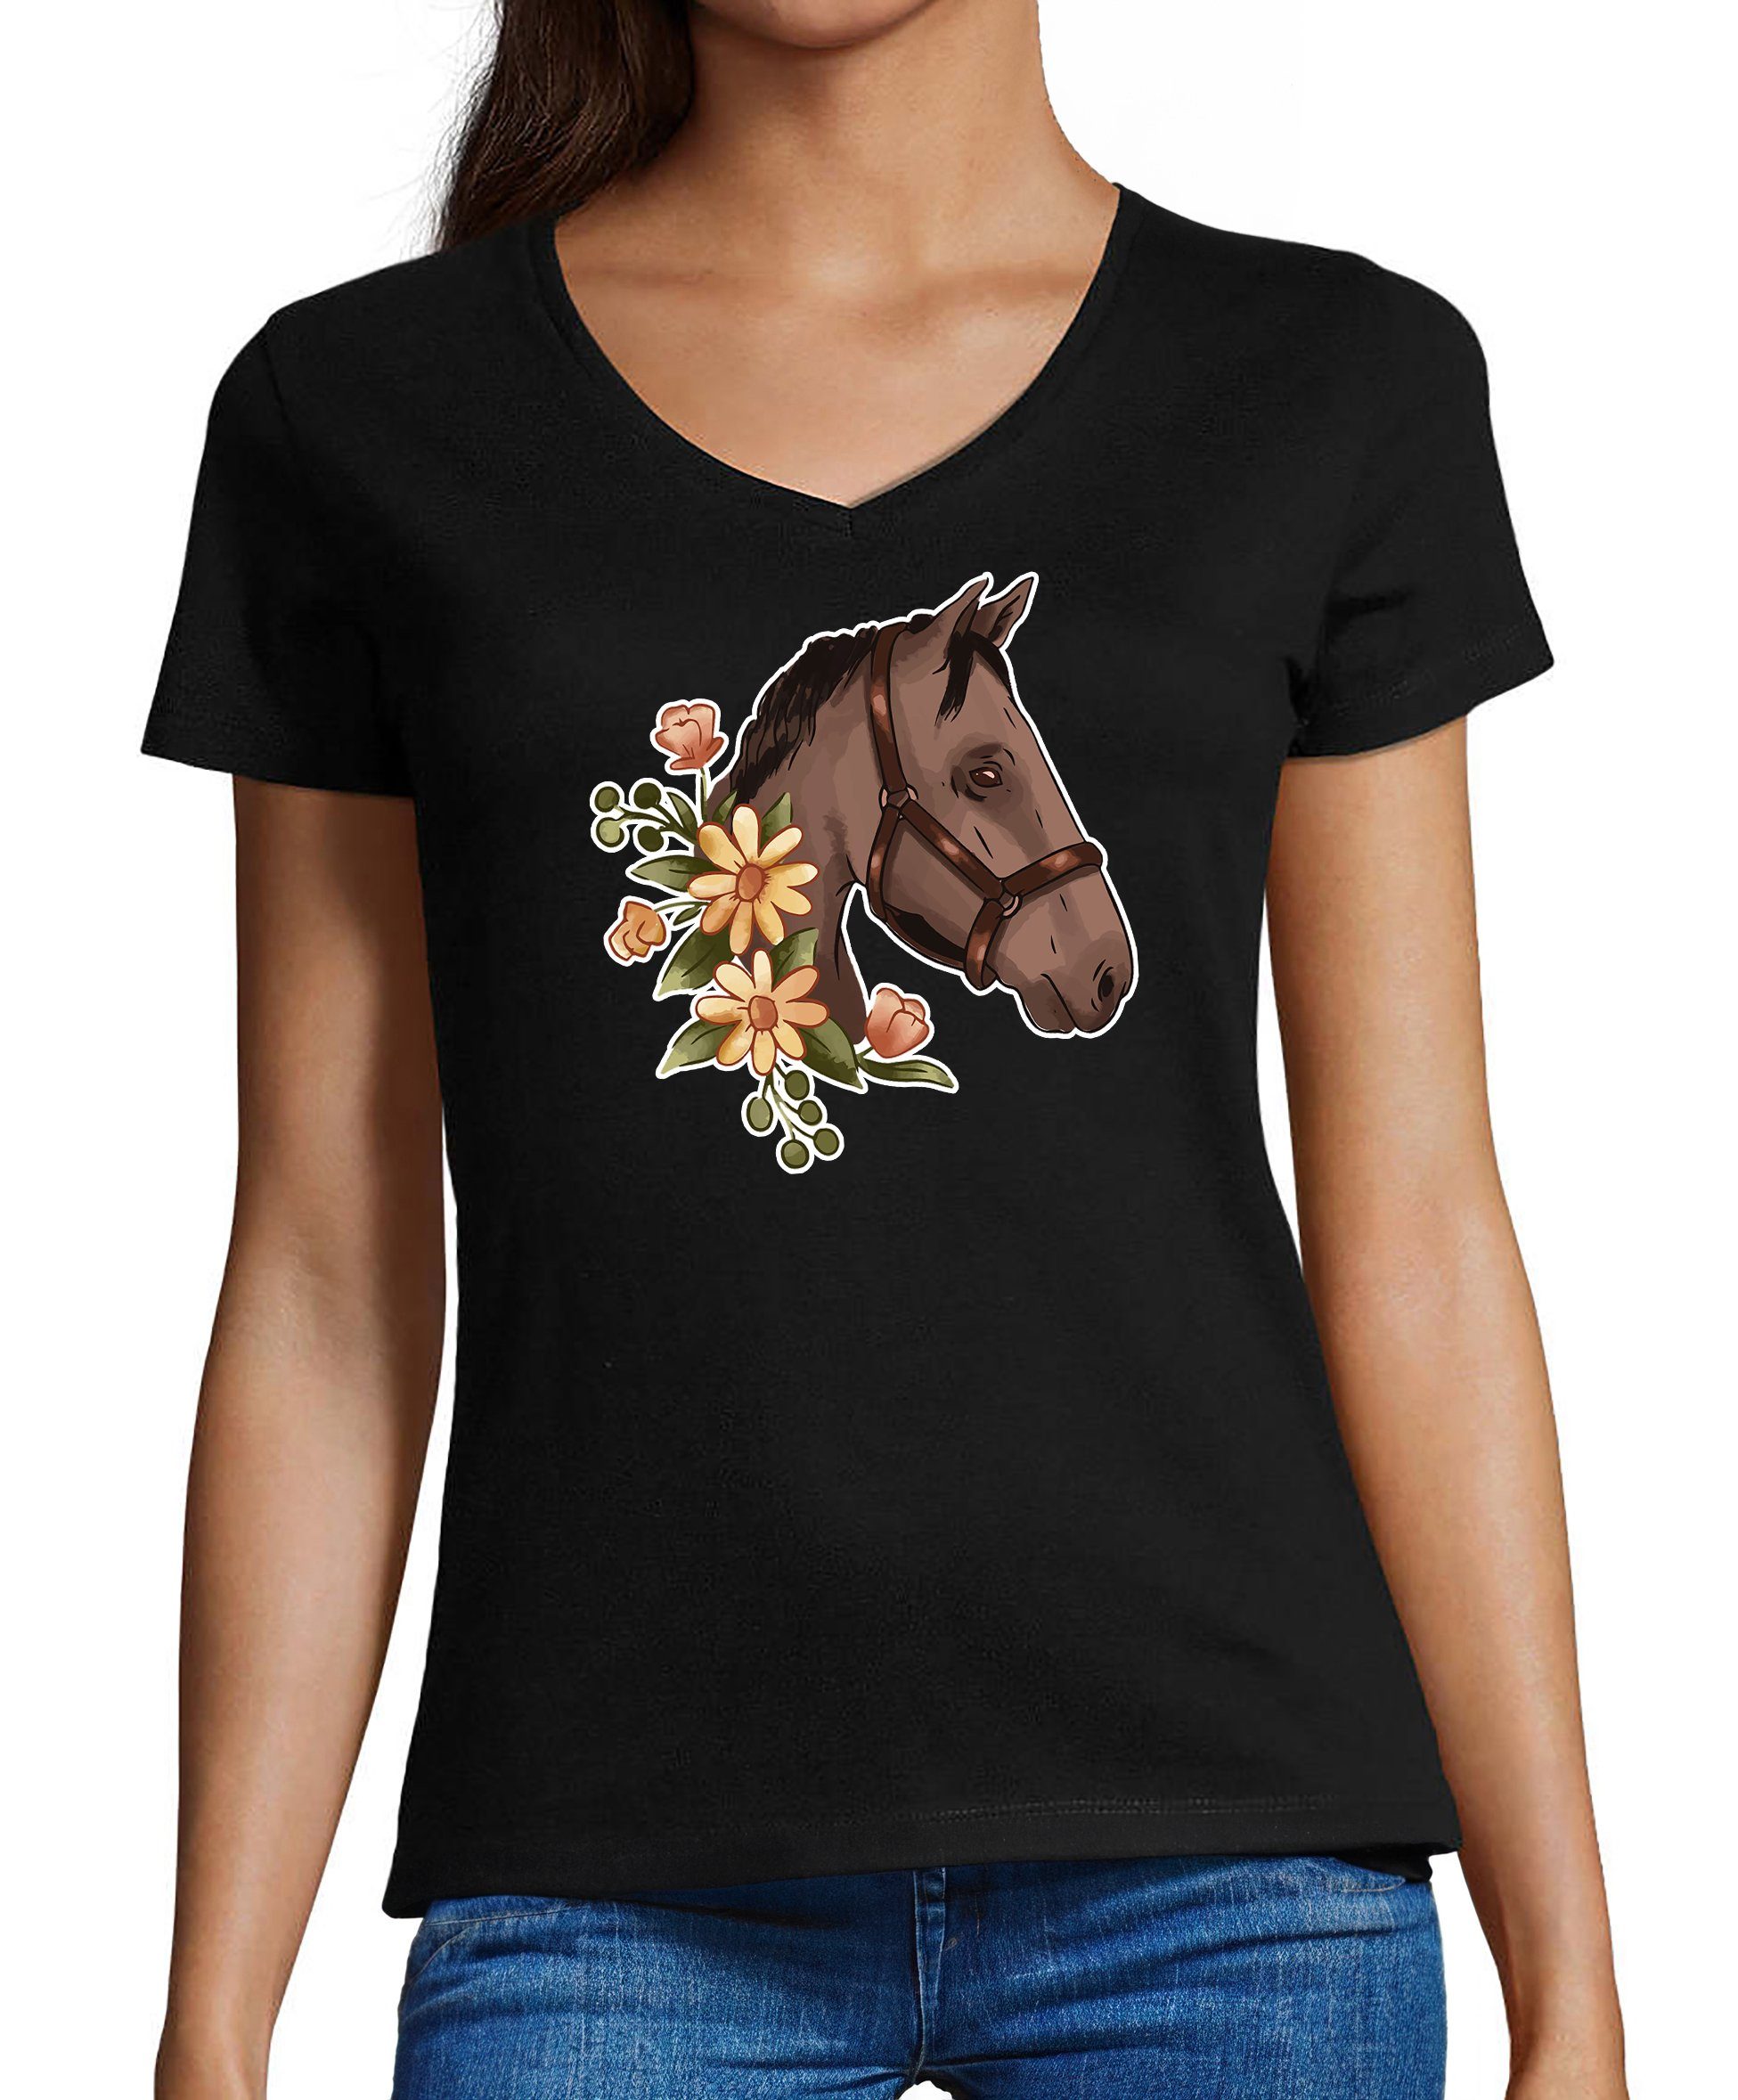 MyDesign24 T-Shirt Damen Pferde Print Shirt - Dunkelbraunes Pferd mit Blumenkranz V-Ausschnitt Baumwollshirt mit Aufdruck Slim Fit, i180